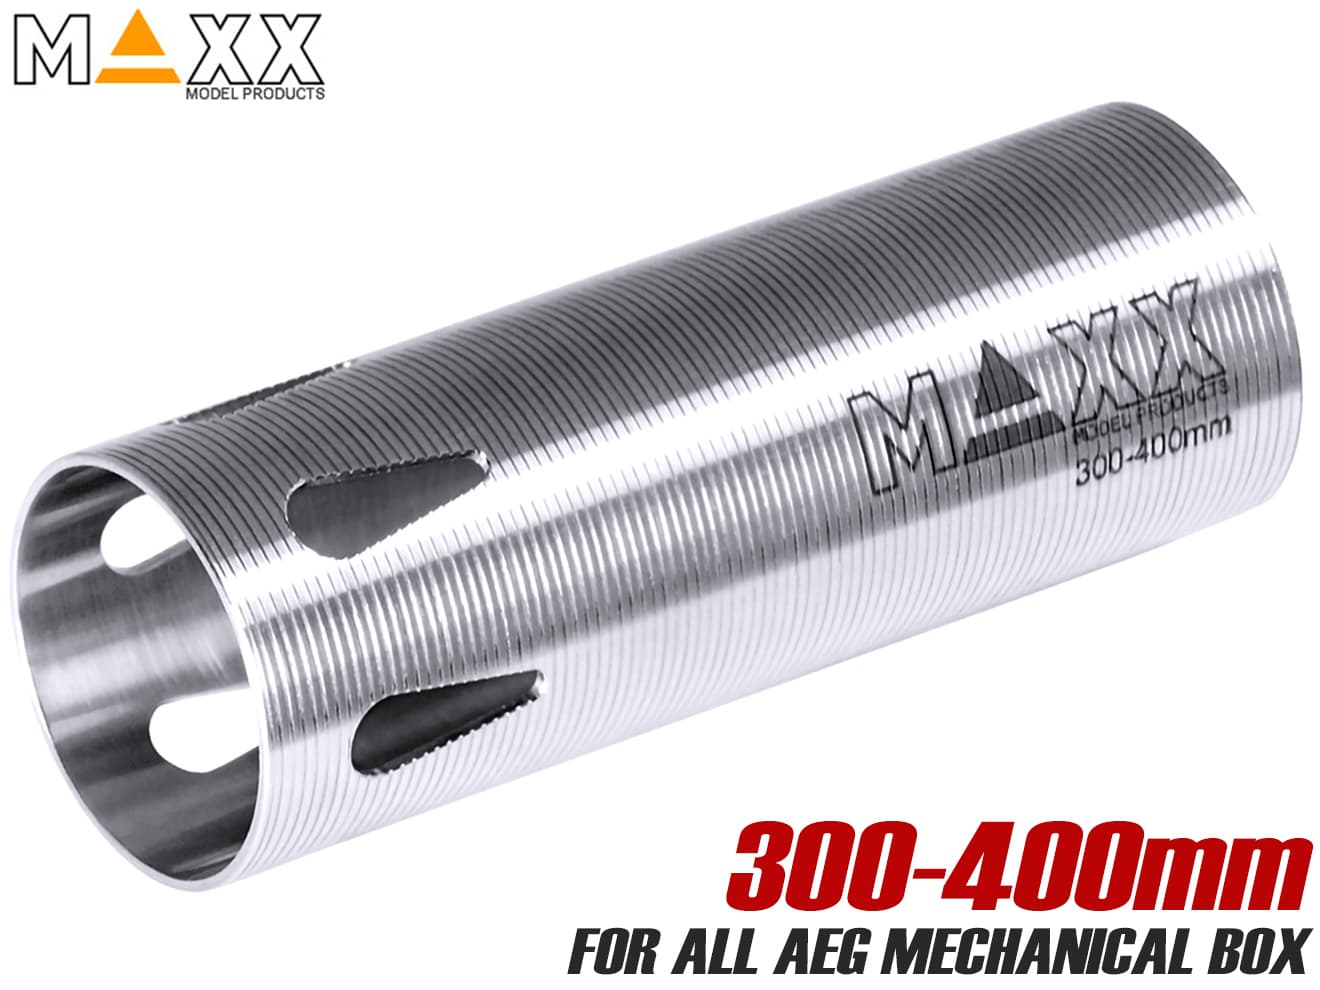 楽天ミリタリーベースMAXX AEG ステンレスCNC シリンダー type C（300-400mm）◆精密 シリンダー 加速ポート 高強度 高精度 削り出し メカボックス 耐久性 耐摩耗性 向上 放熱性